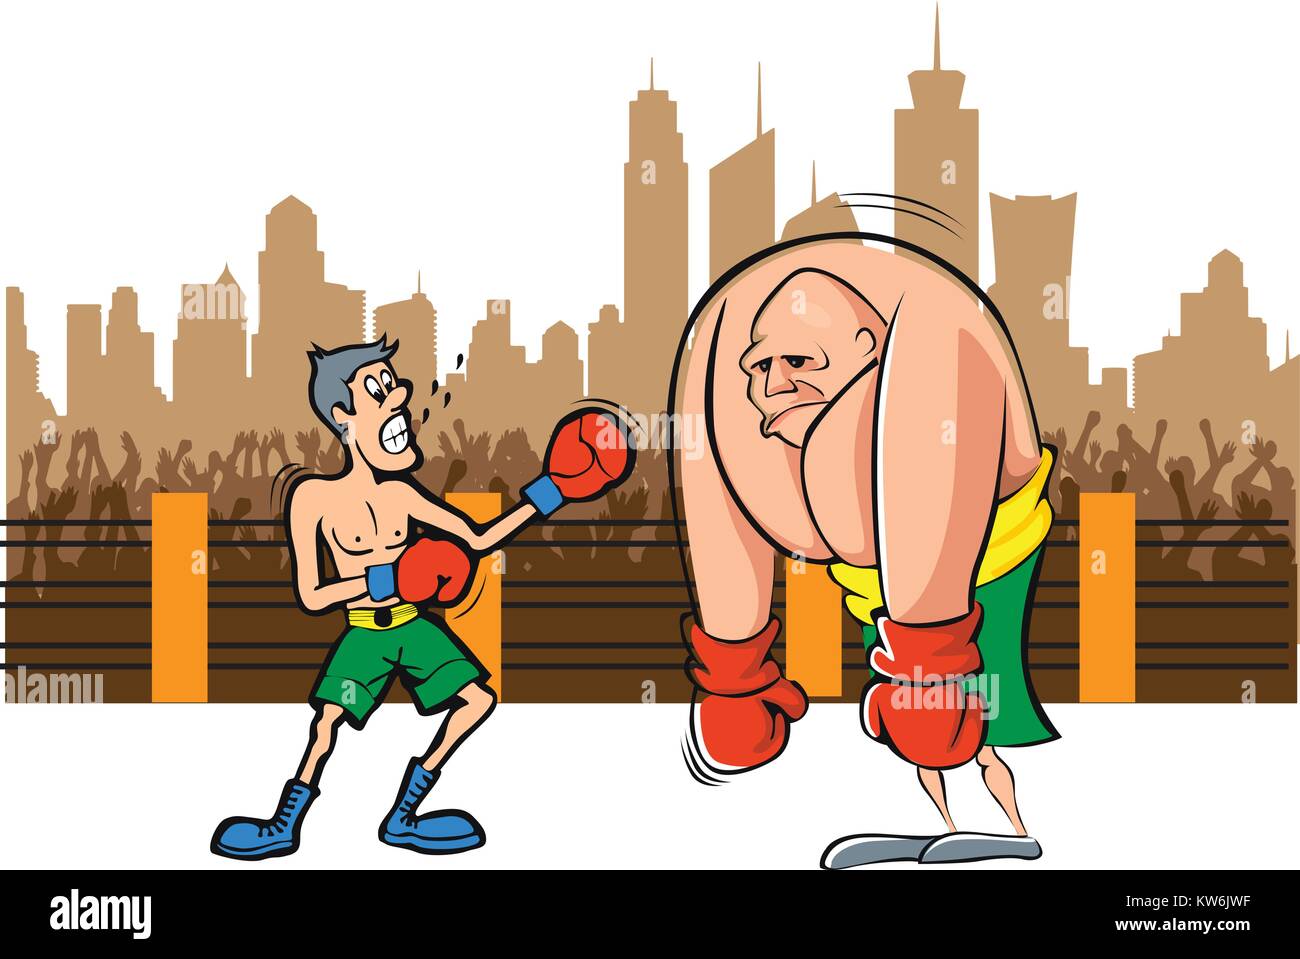 En boxe, la taille n'importe pas du tout de gagner la foule bénéficiant d'illustration Illustration de Vecteur